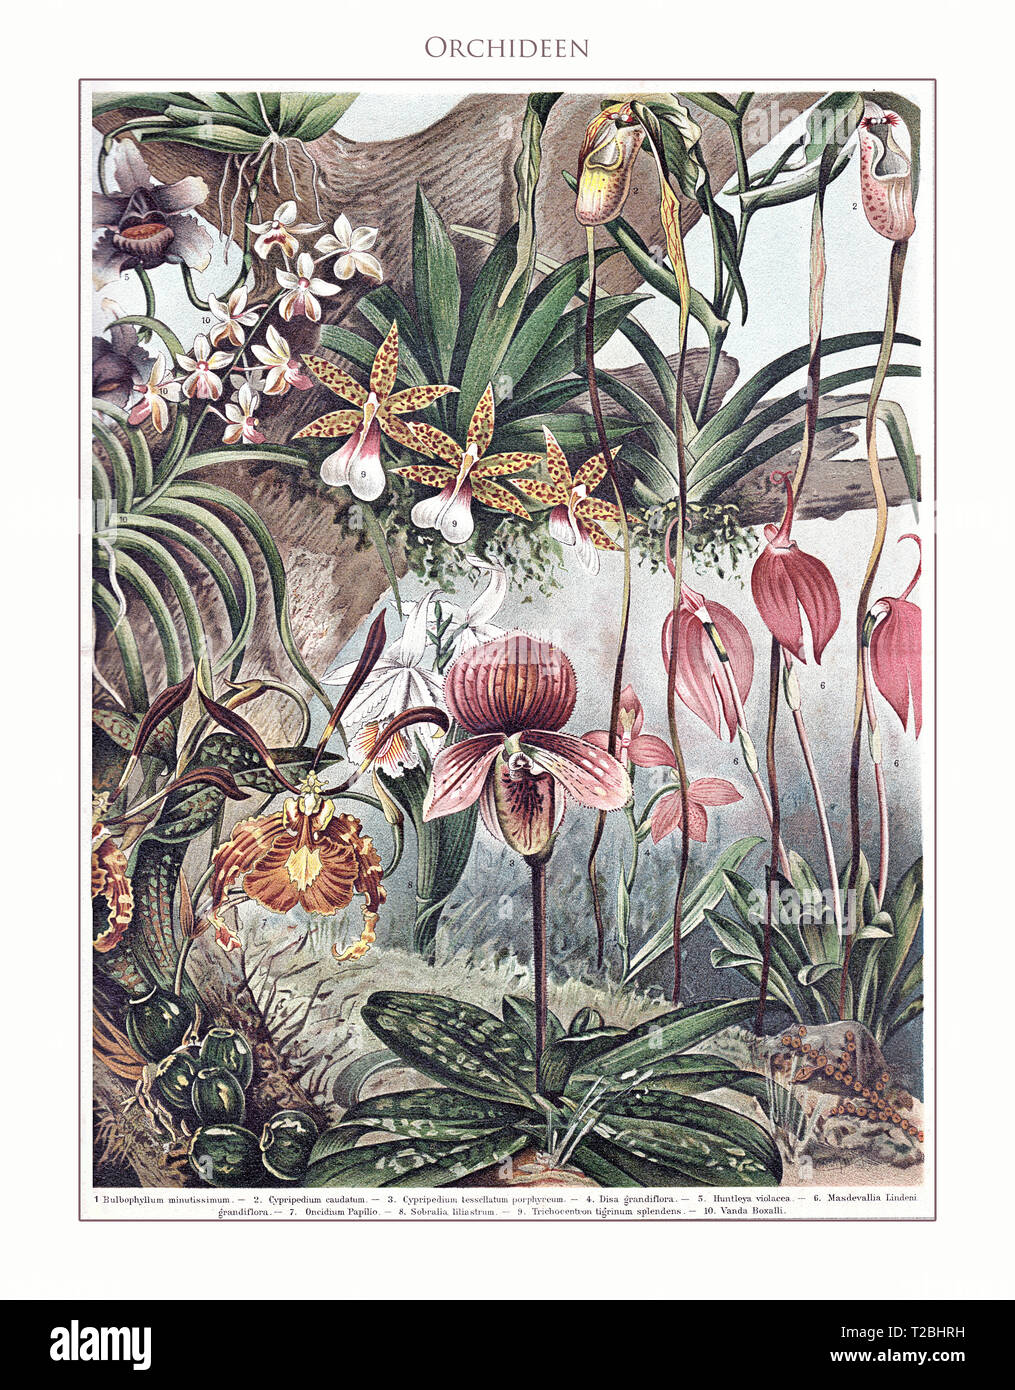 Orchidées - tableau illustré et Meyers Konversations-Lexikon restauré de 5. édition (1893-1901), Encyclopédie universelle en langue allemande. Banque D'Images